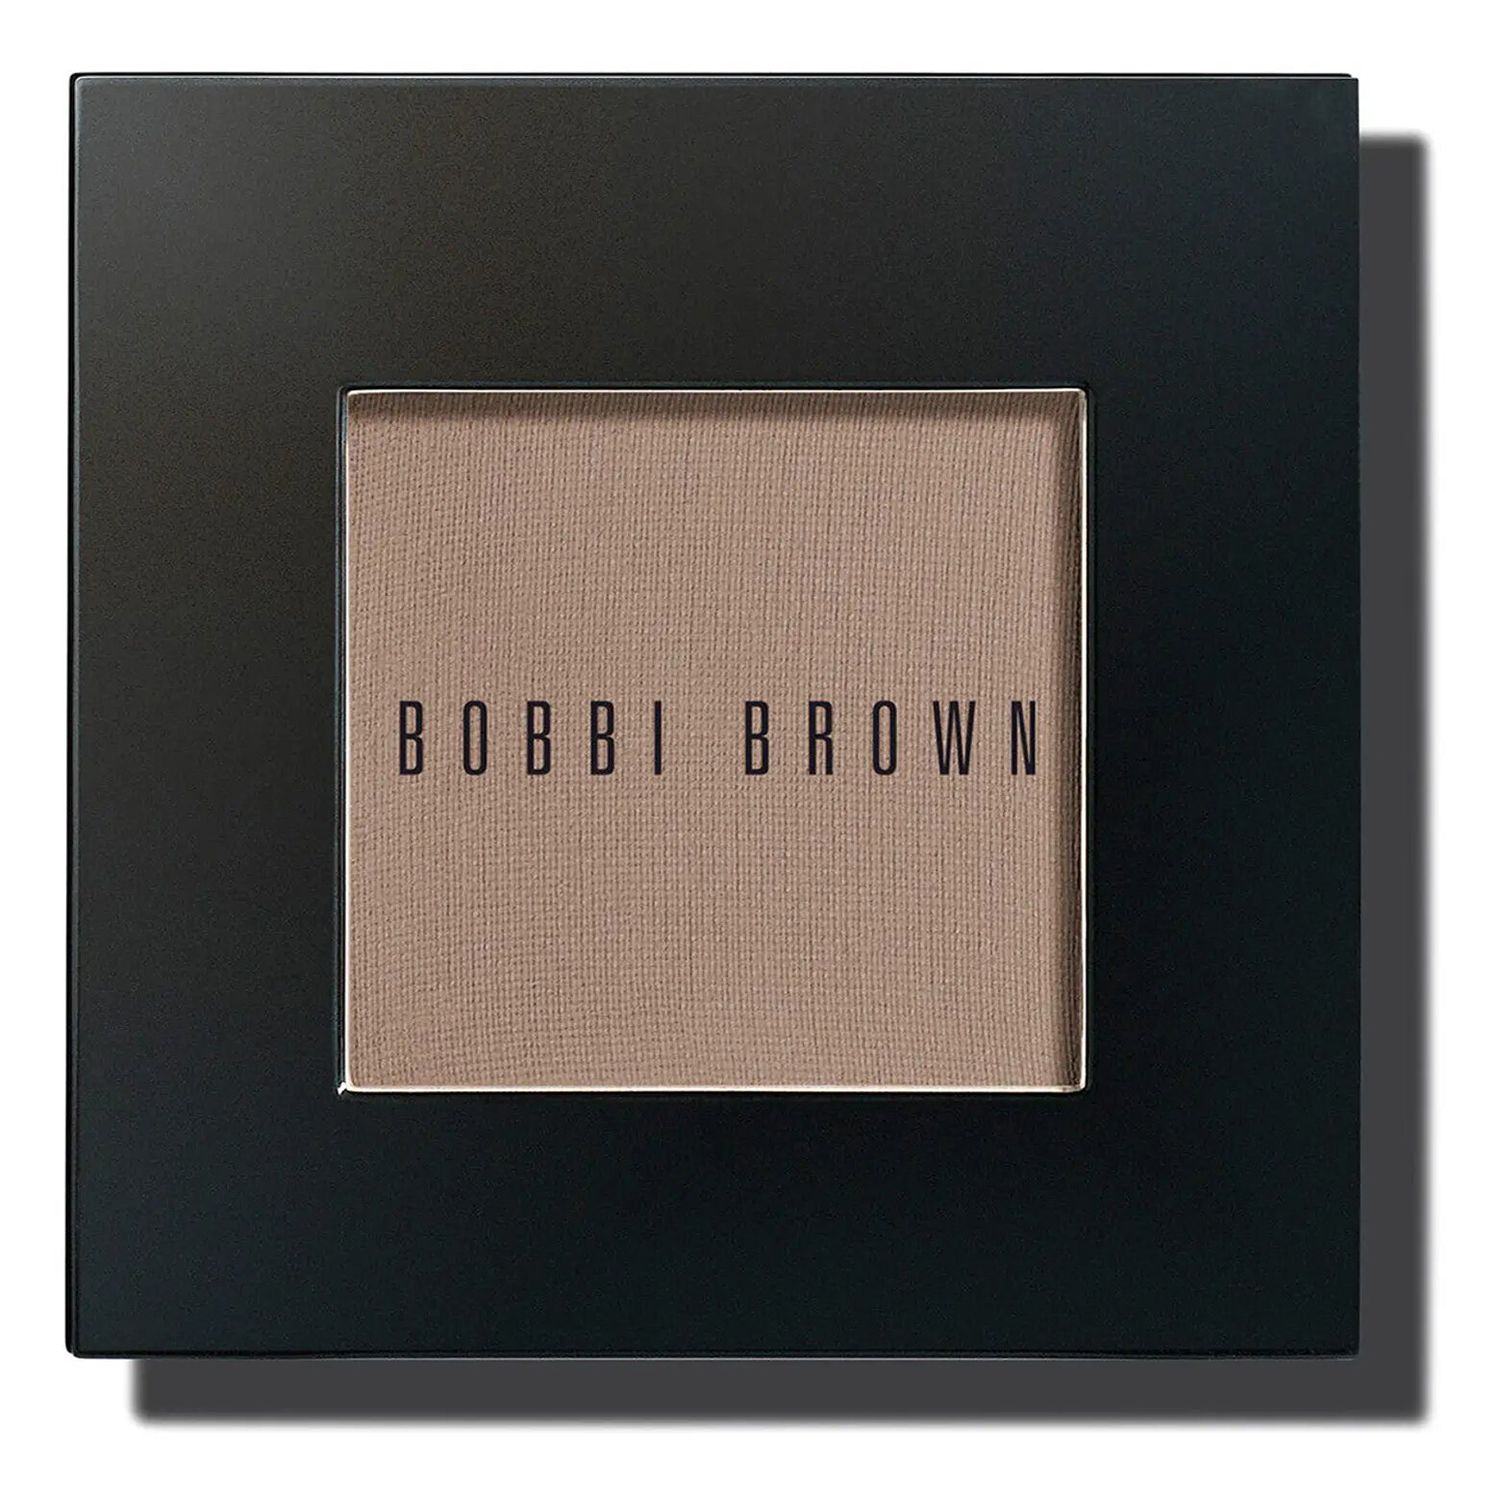 Bobbi Brown Make-up